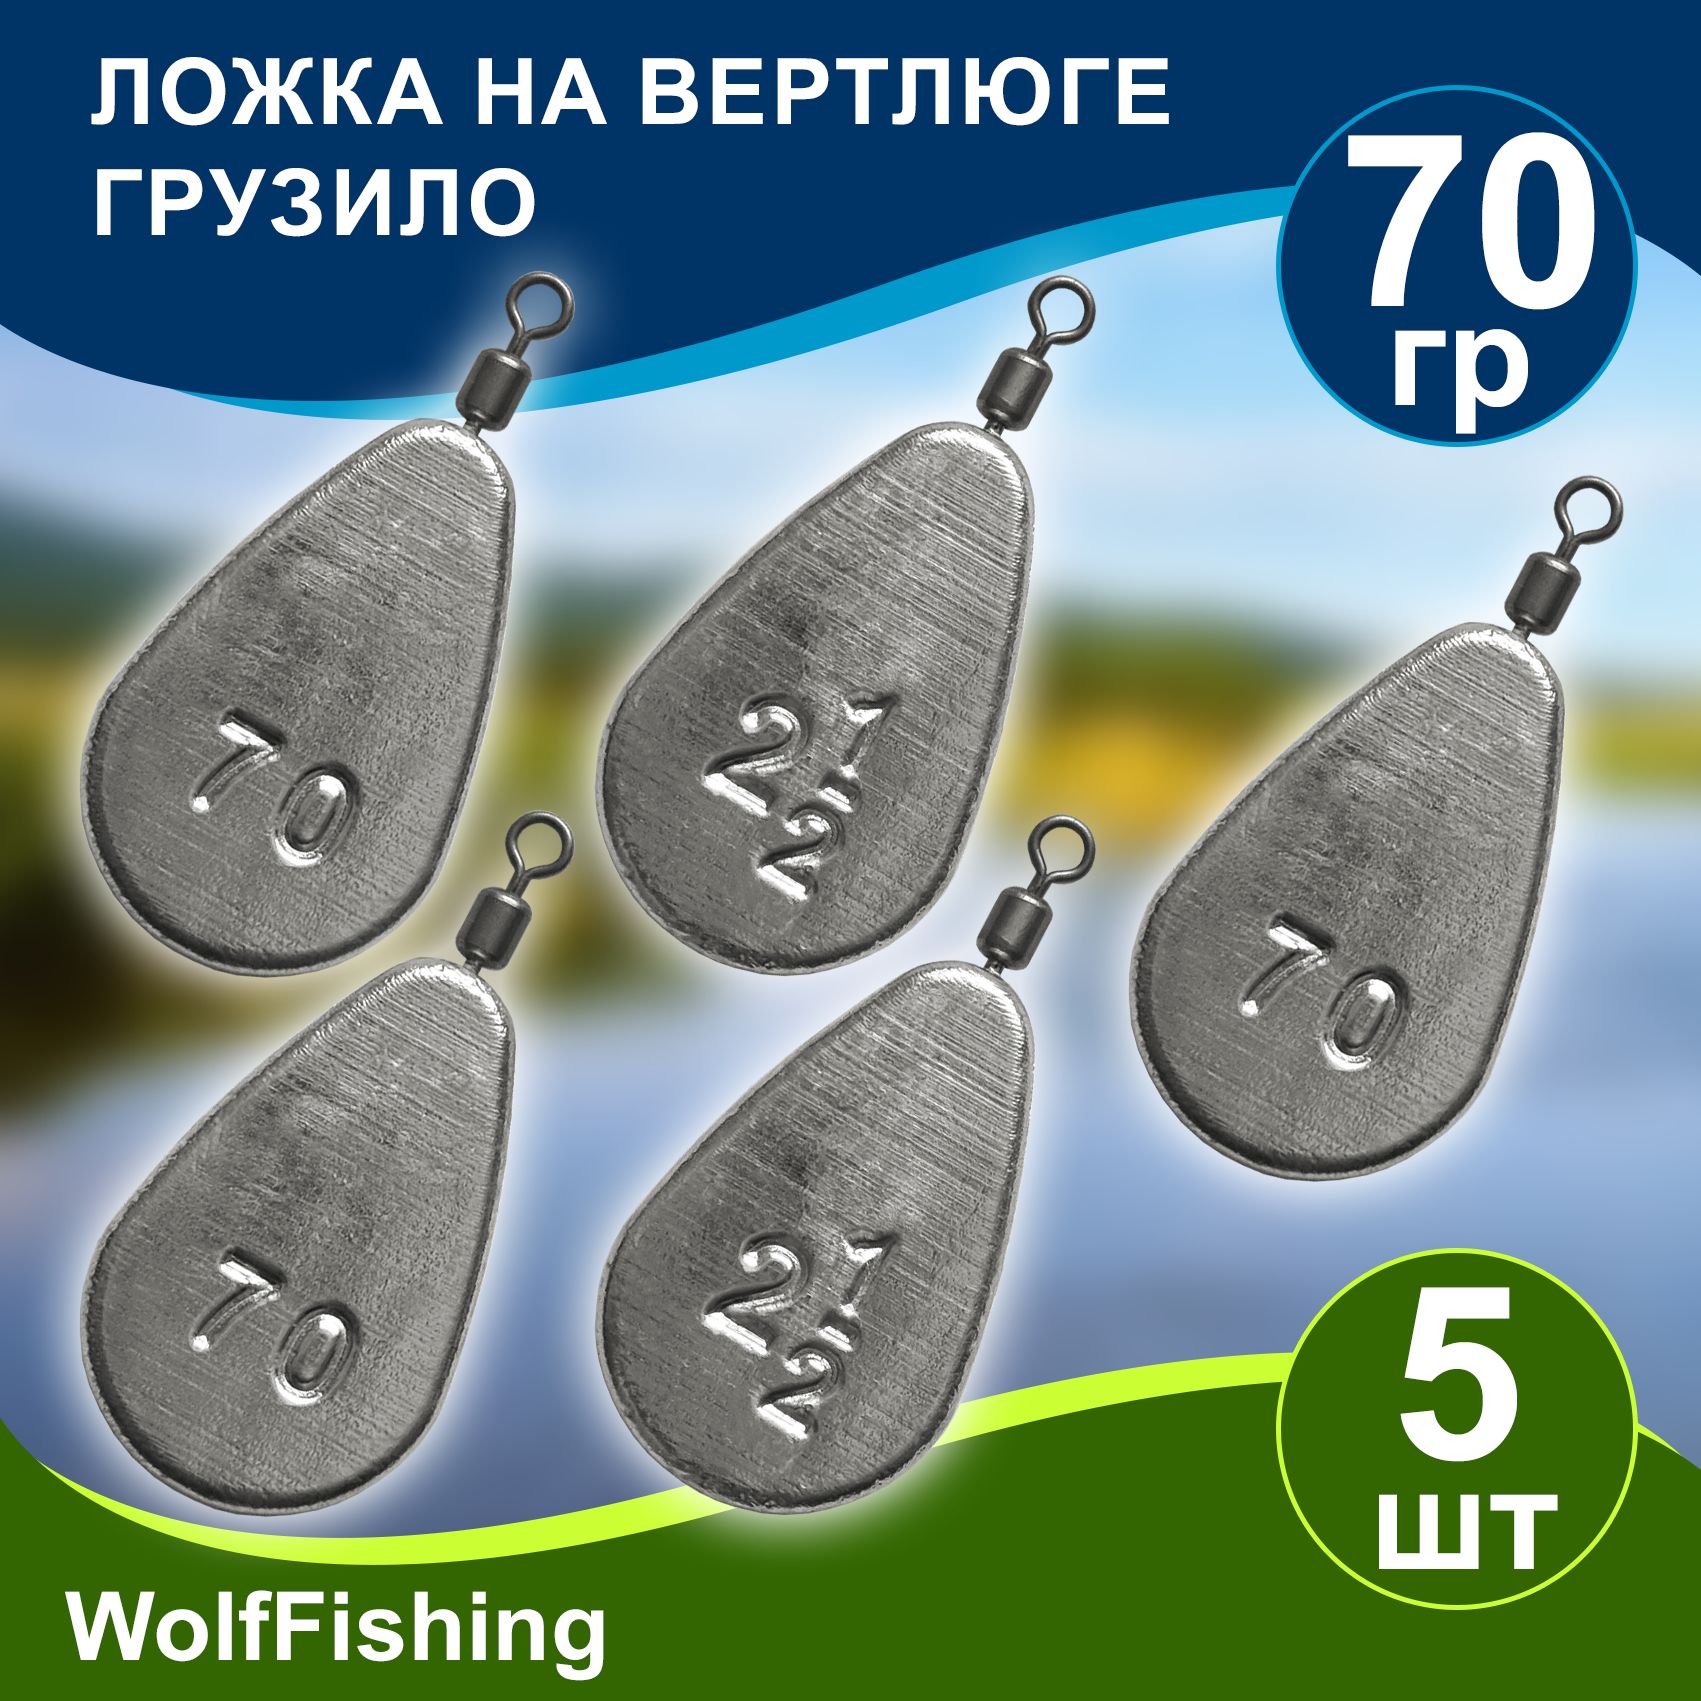 Рыболовные грузила для рыбалки - купить можно оптом и в розницу.